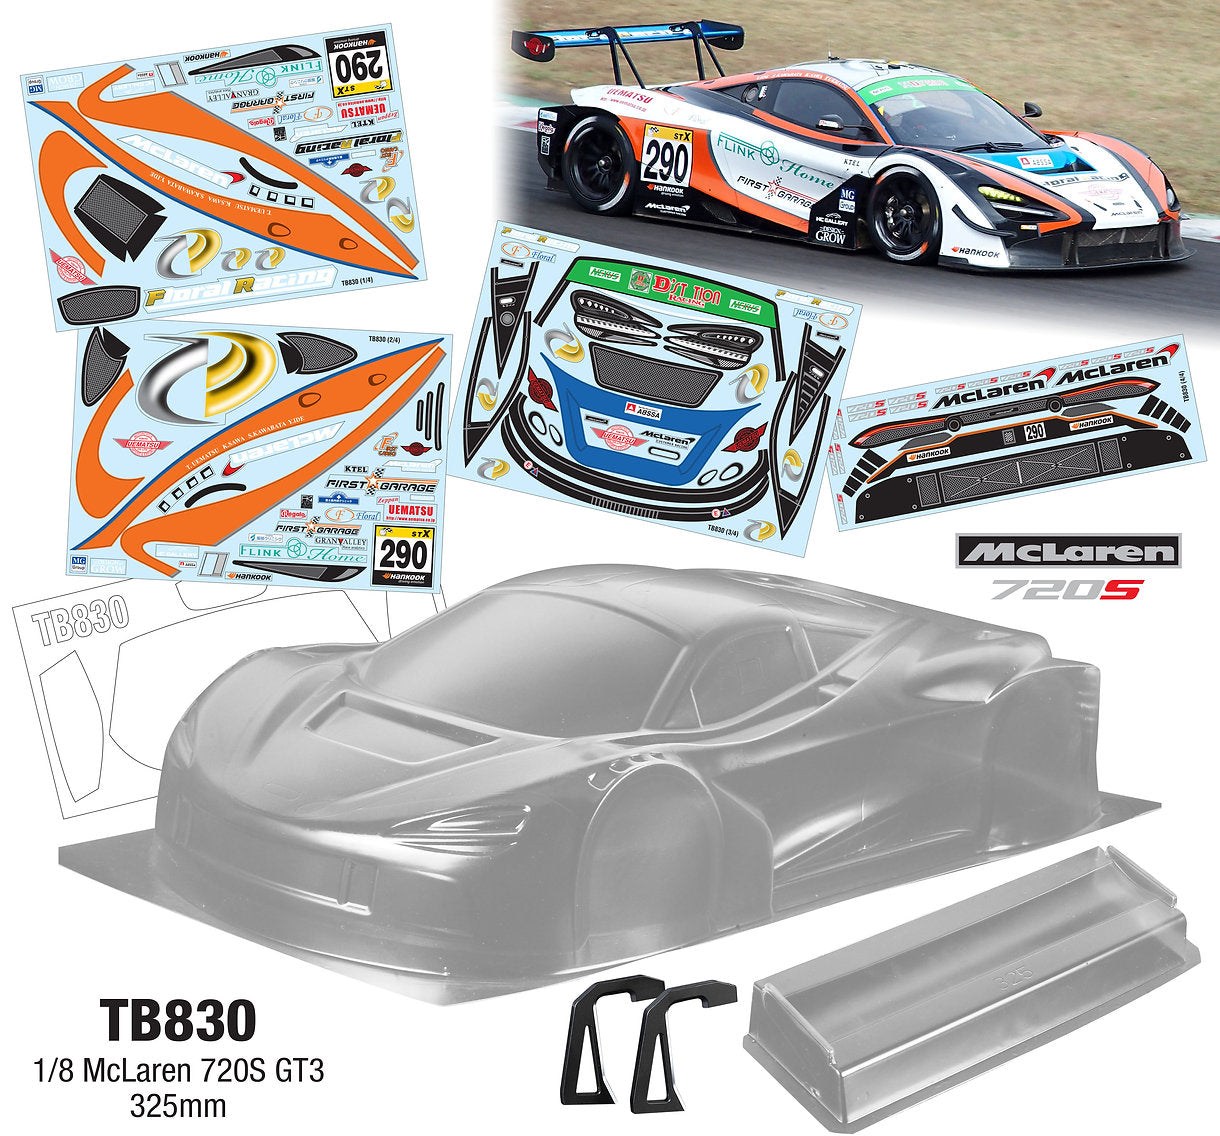 TB830 1/8 McLaren 720S GT3 (325mm) HOBAO Kyosho Mugen Sworkz TLR Hotbodies Traxxas